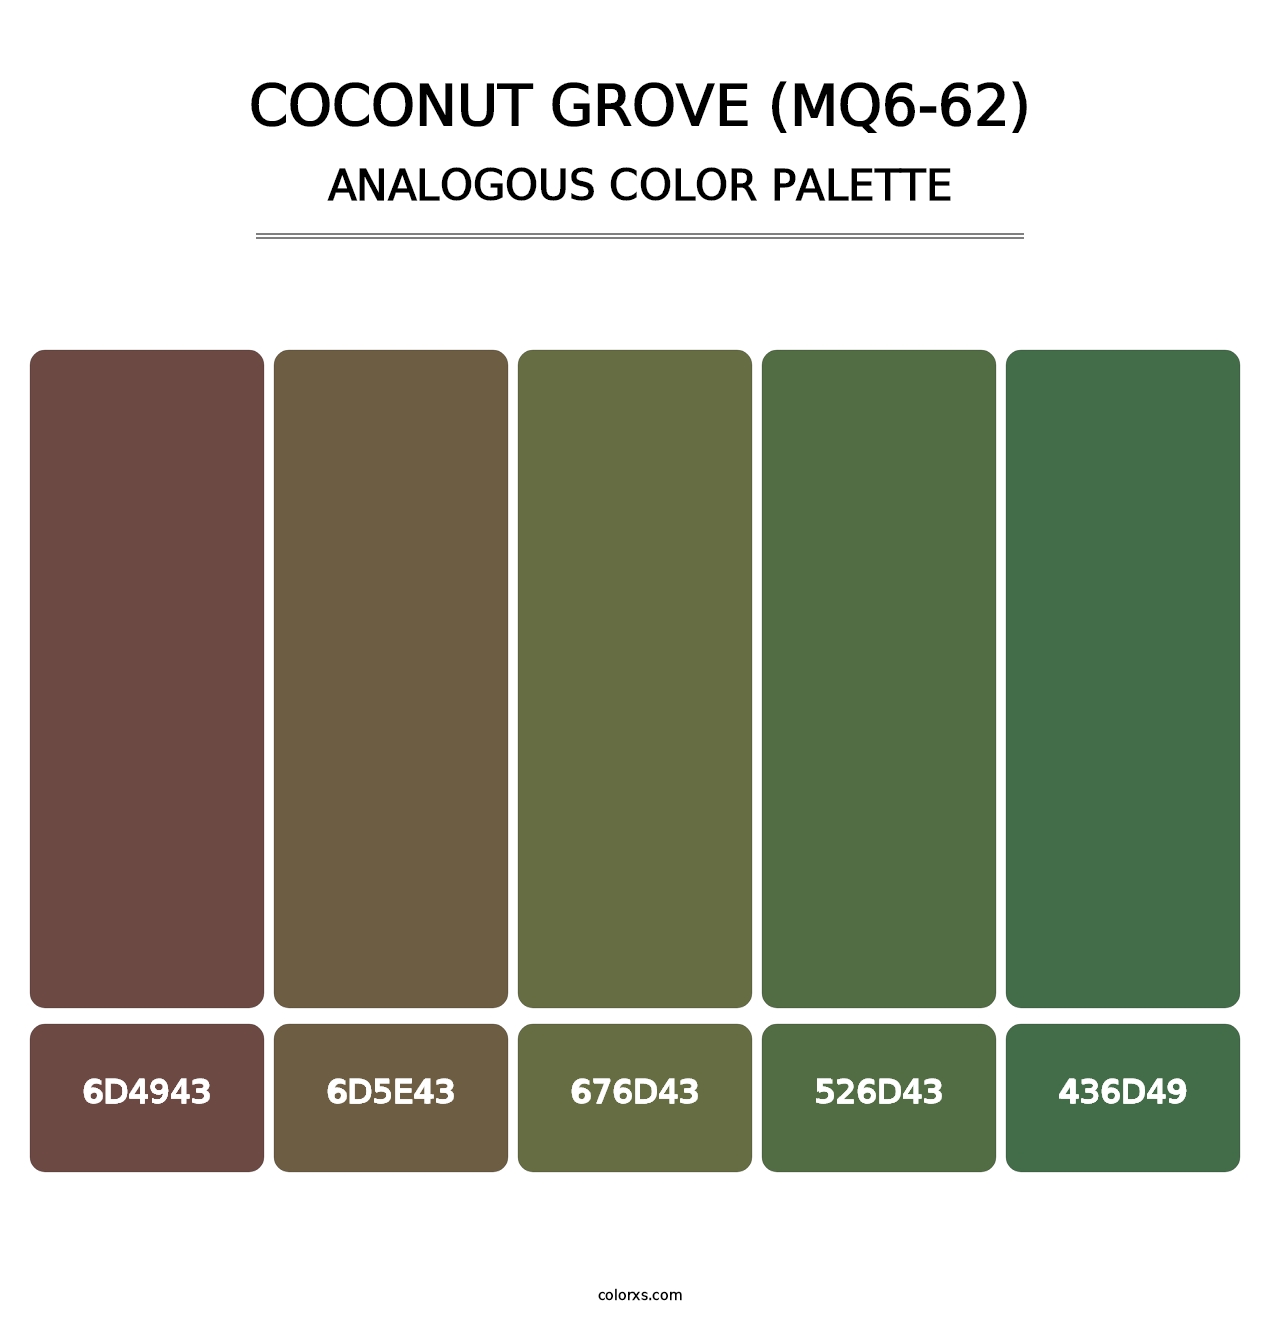 Coconut Grove (MQ6-62) - Analogous Color Palette